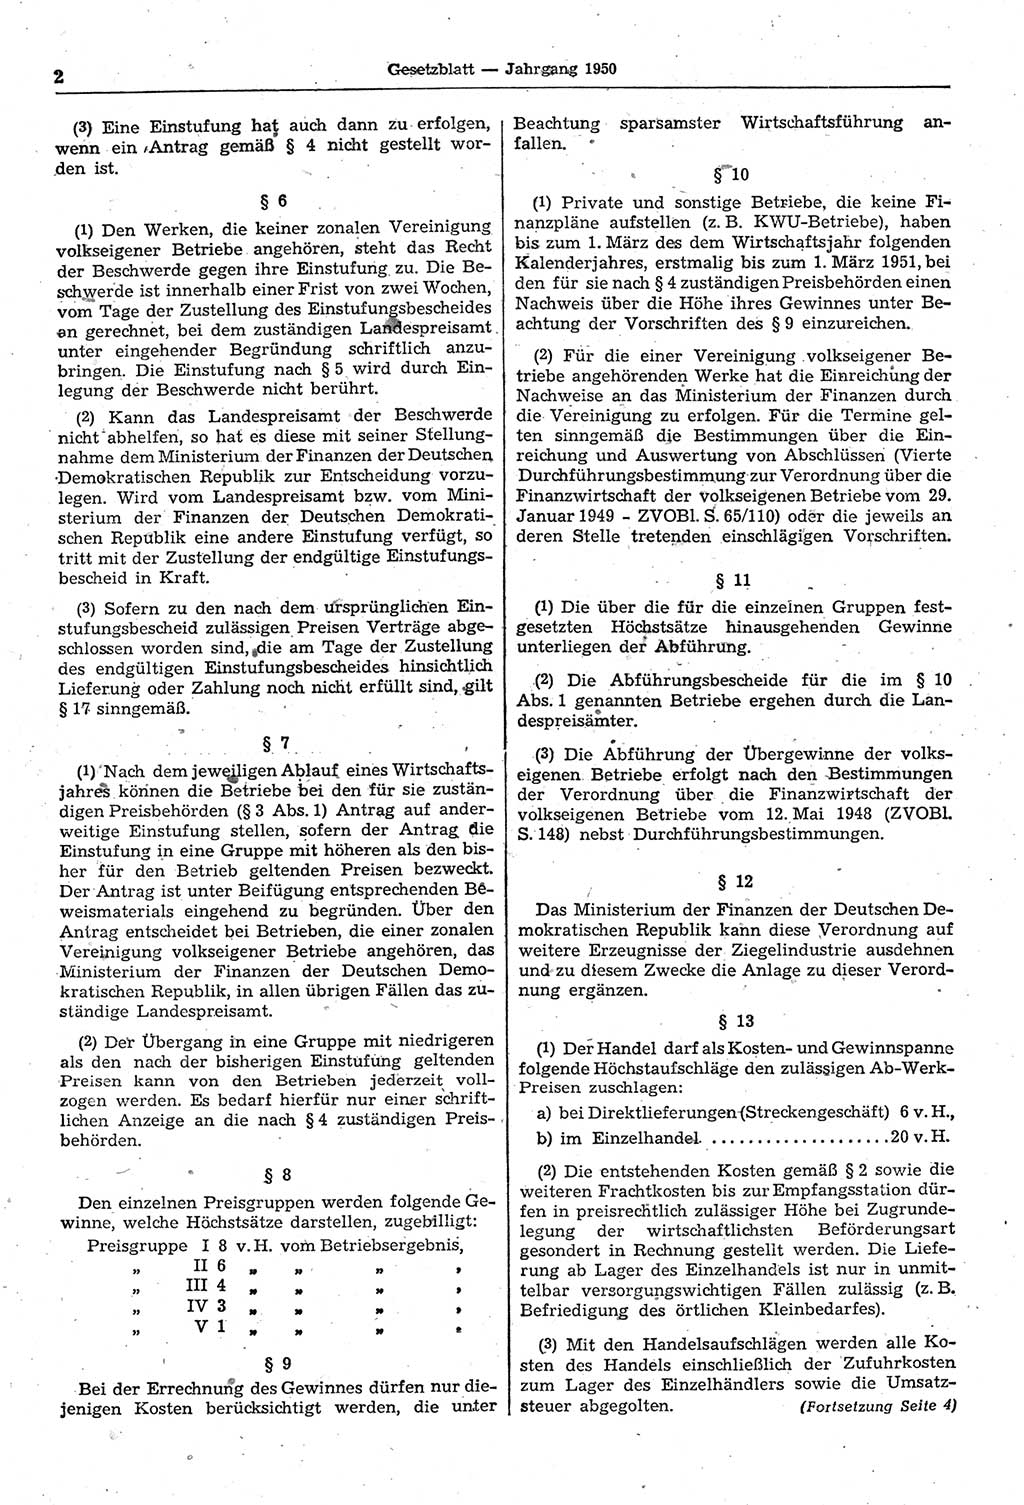 Gesetzblatt (GBl.) der Deutschen Demokratischen Republik (DDR) 1950, Seite 2 (GBl. DDR 1950, S. 2)